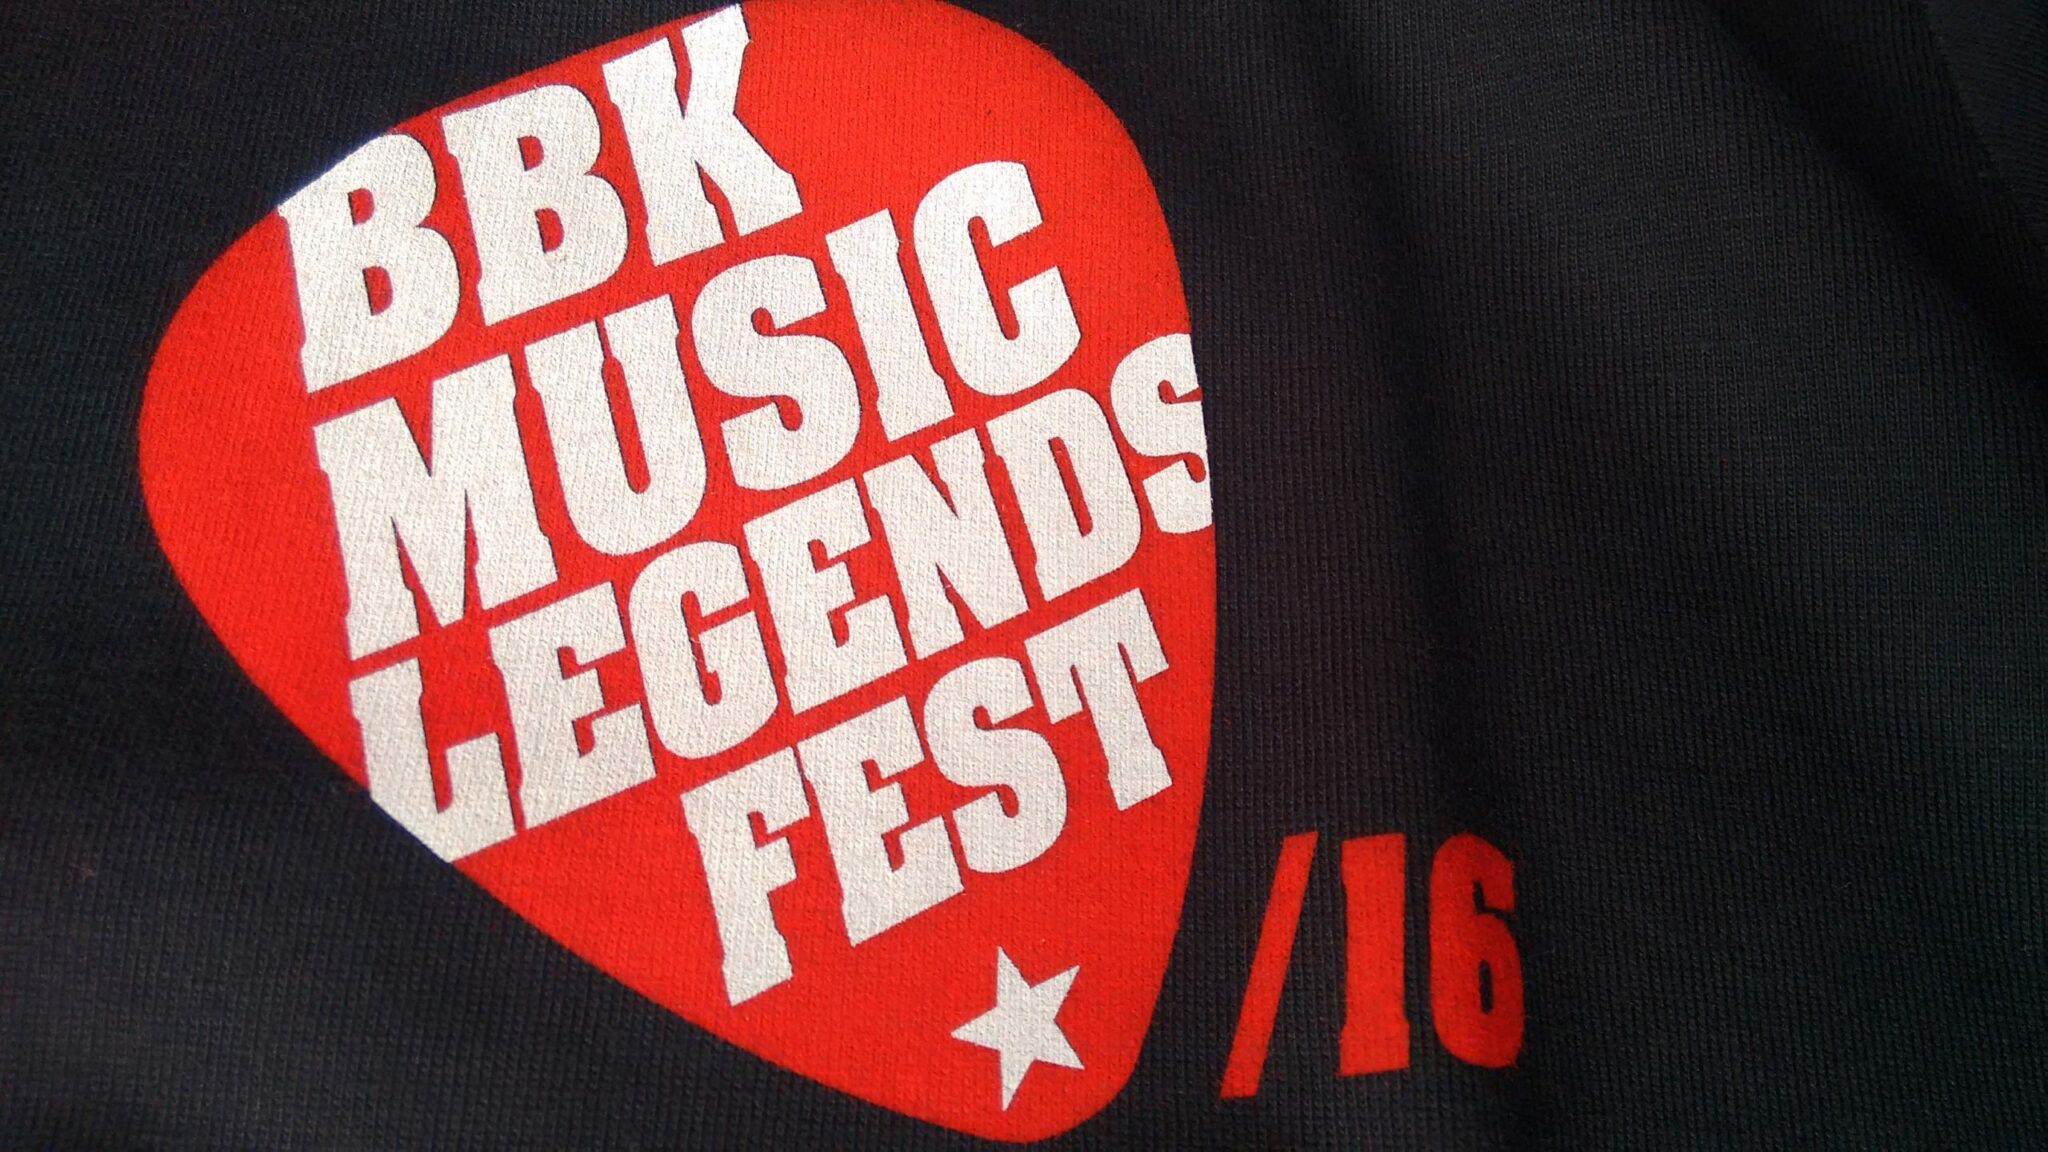 BBK Music Legends Fest 2016